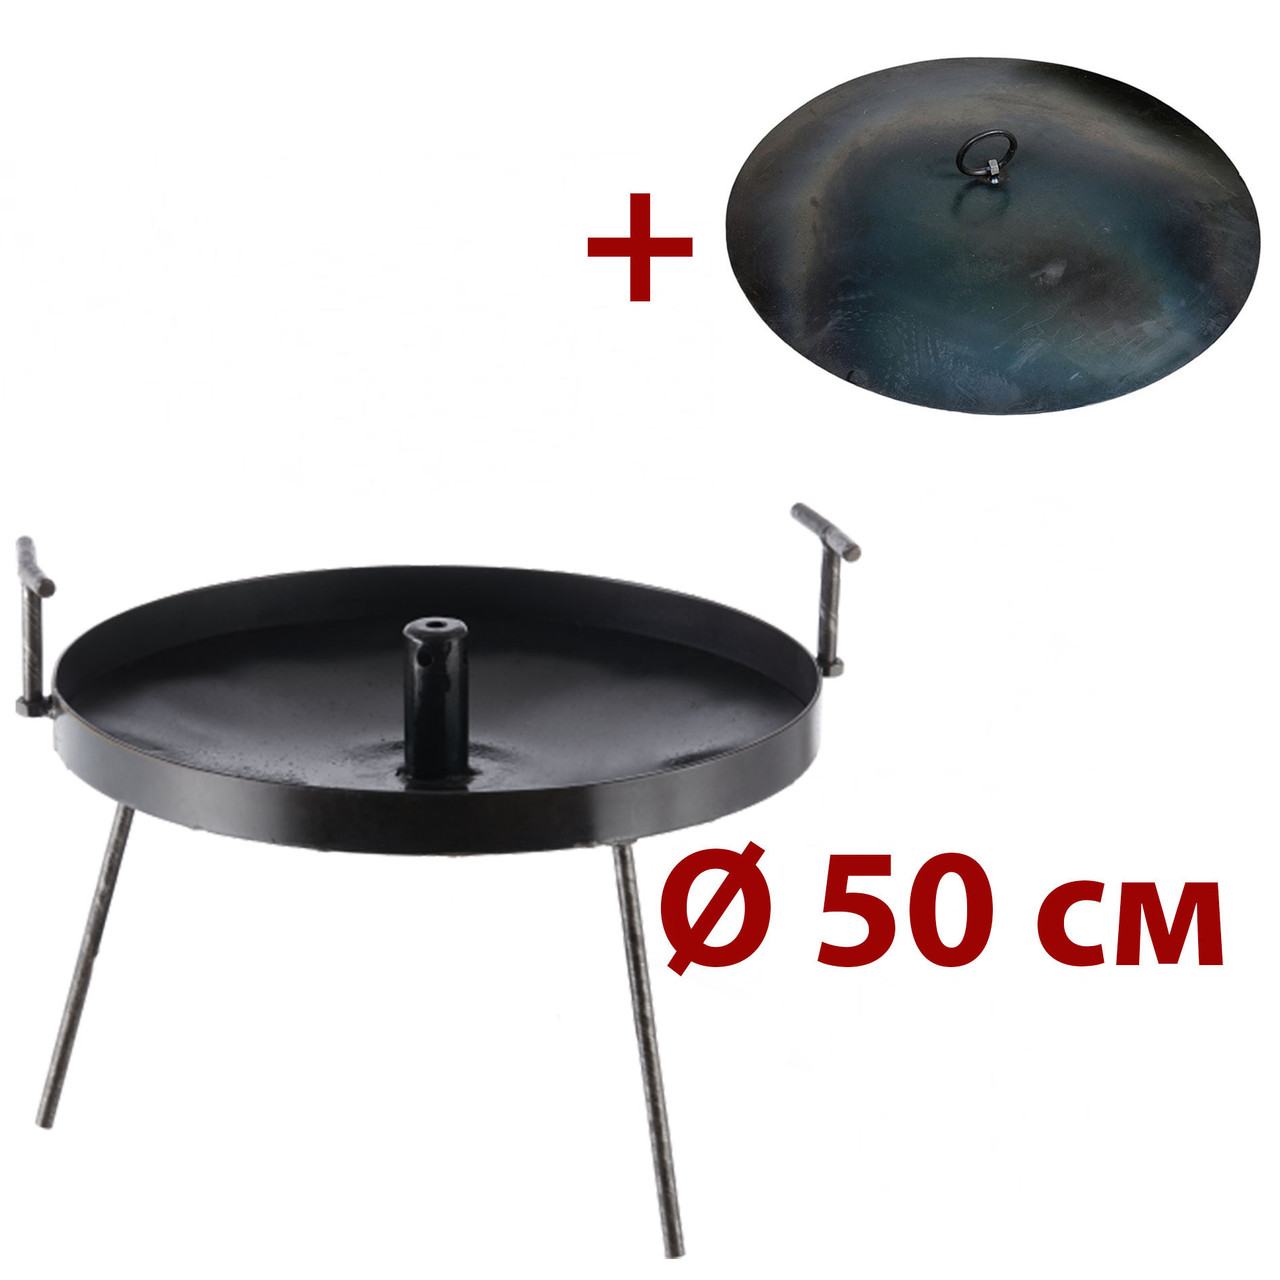 

Сковорода 50 см из диска с отверстием для быстрого приготовления SHOP PAN (Крышка+Сковорода)